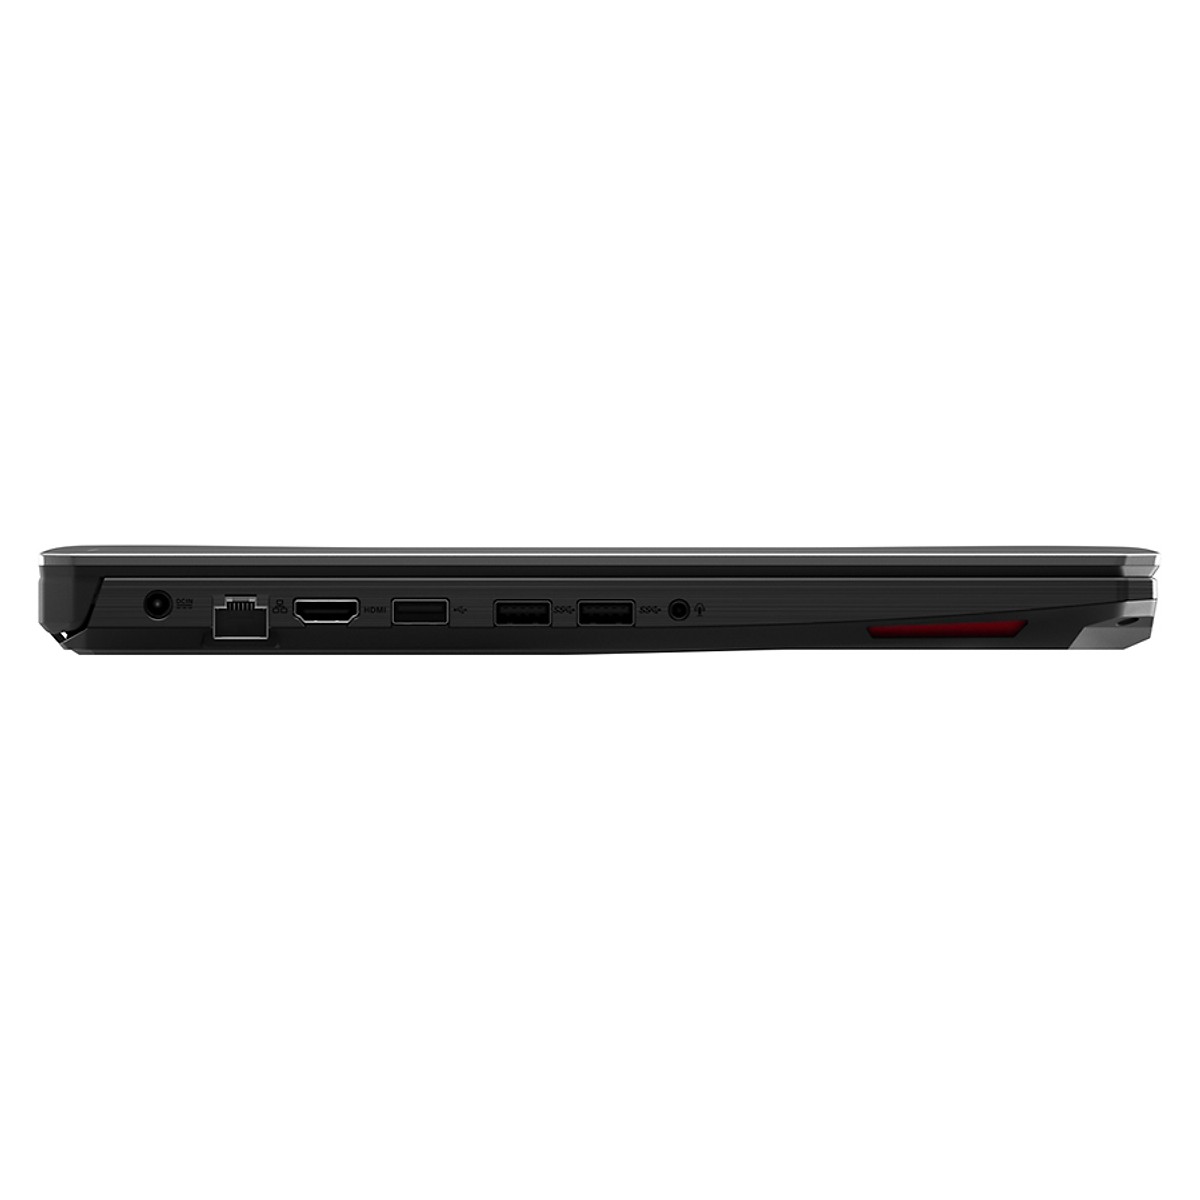 Laptop Gaming Asus TUF FX505GE-BQ308T Core i7-8750H/ GTX1050Ti 4G/ Win10 (15.6″ FHD) - Hàng Chính Hãng